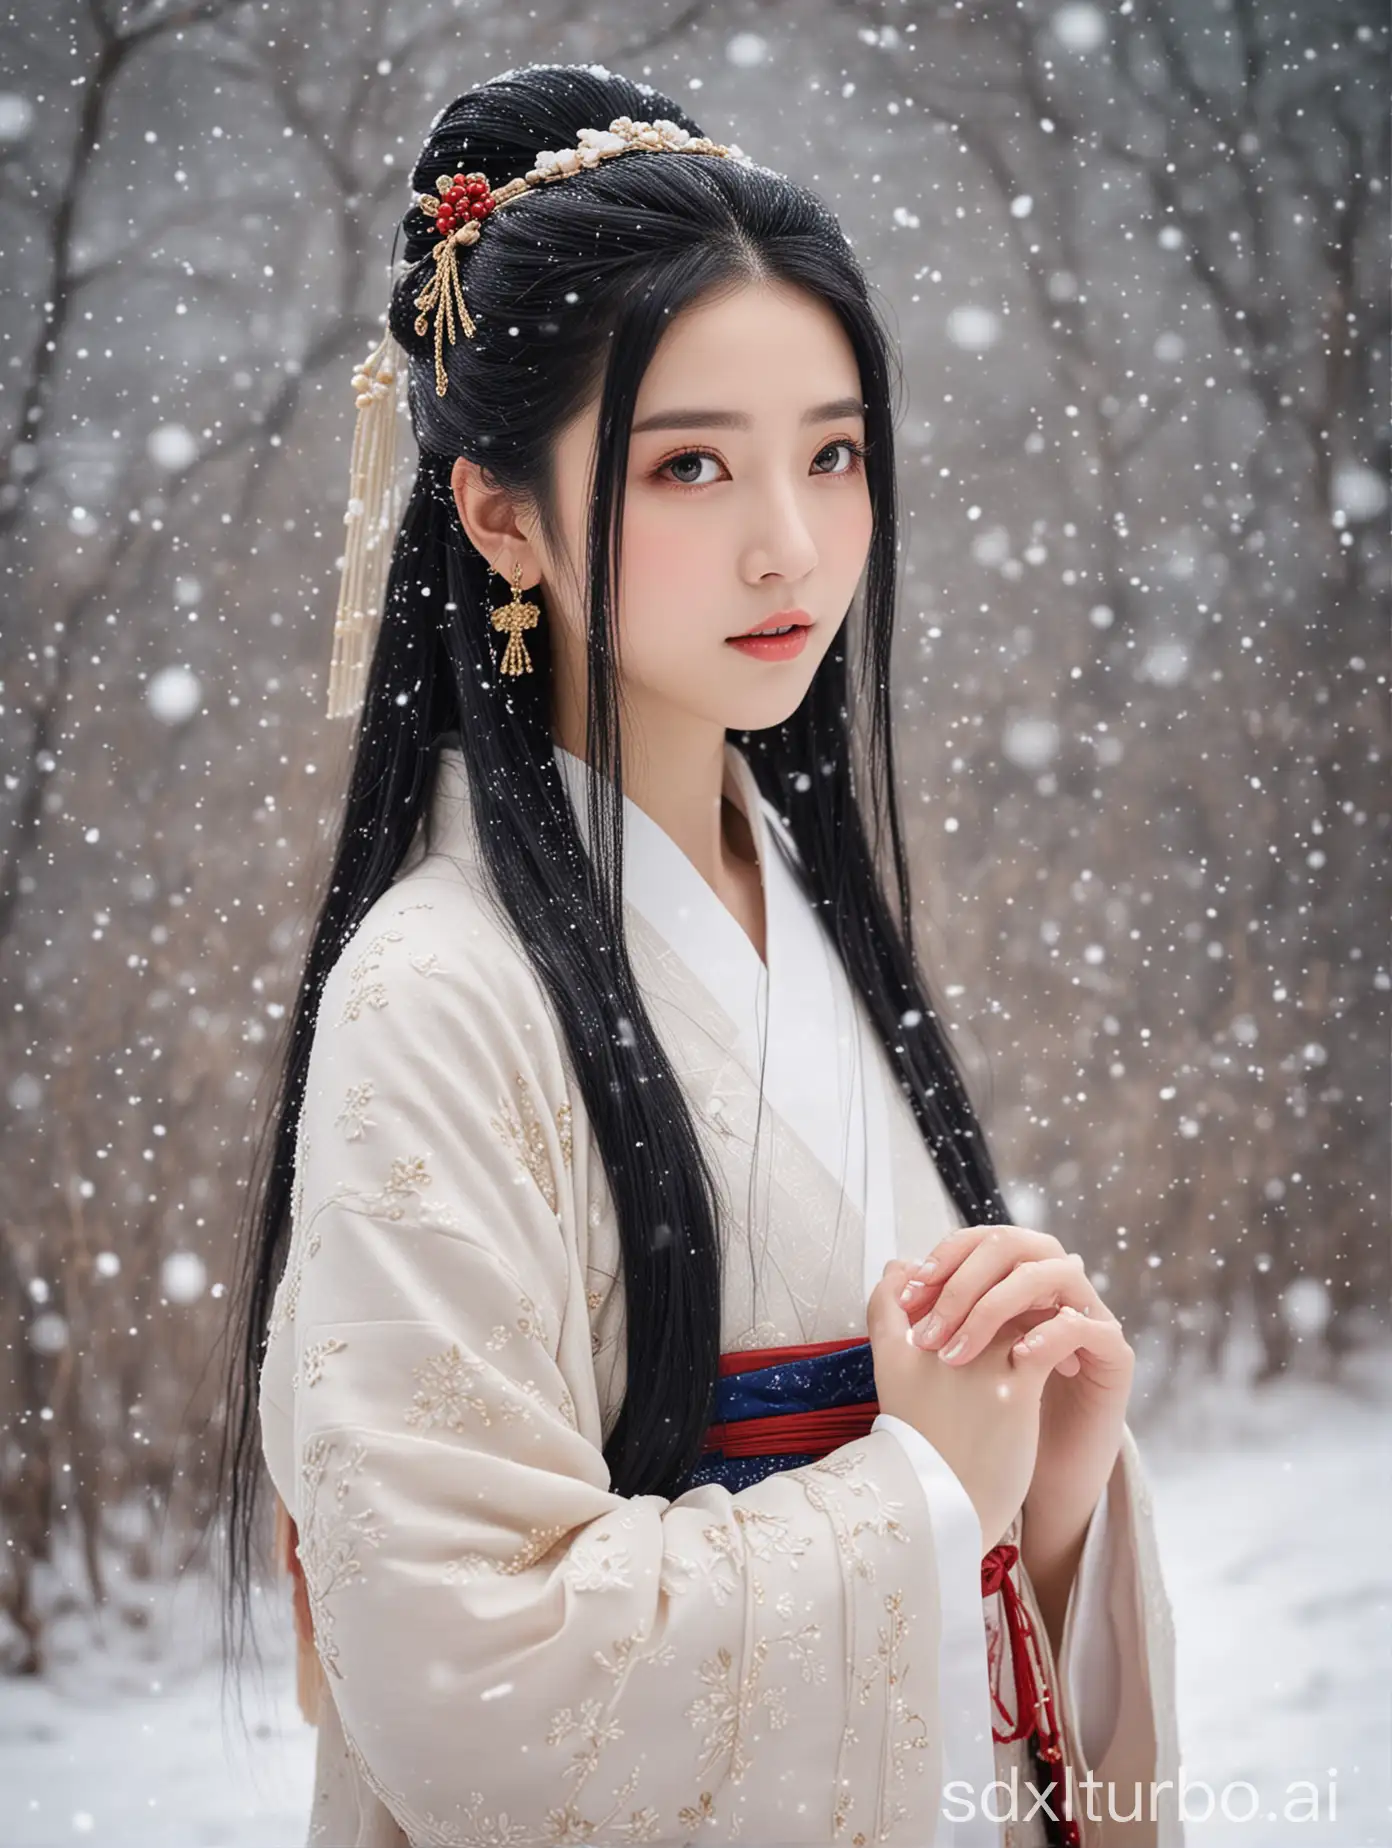 a girl, hanfu dress, black hair, long hair, hair ornament, snowing,